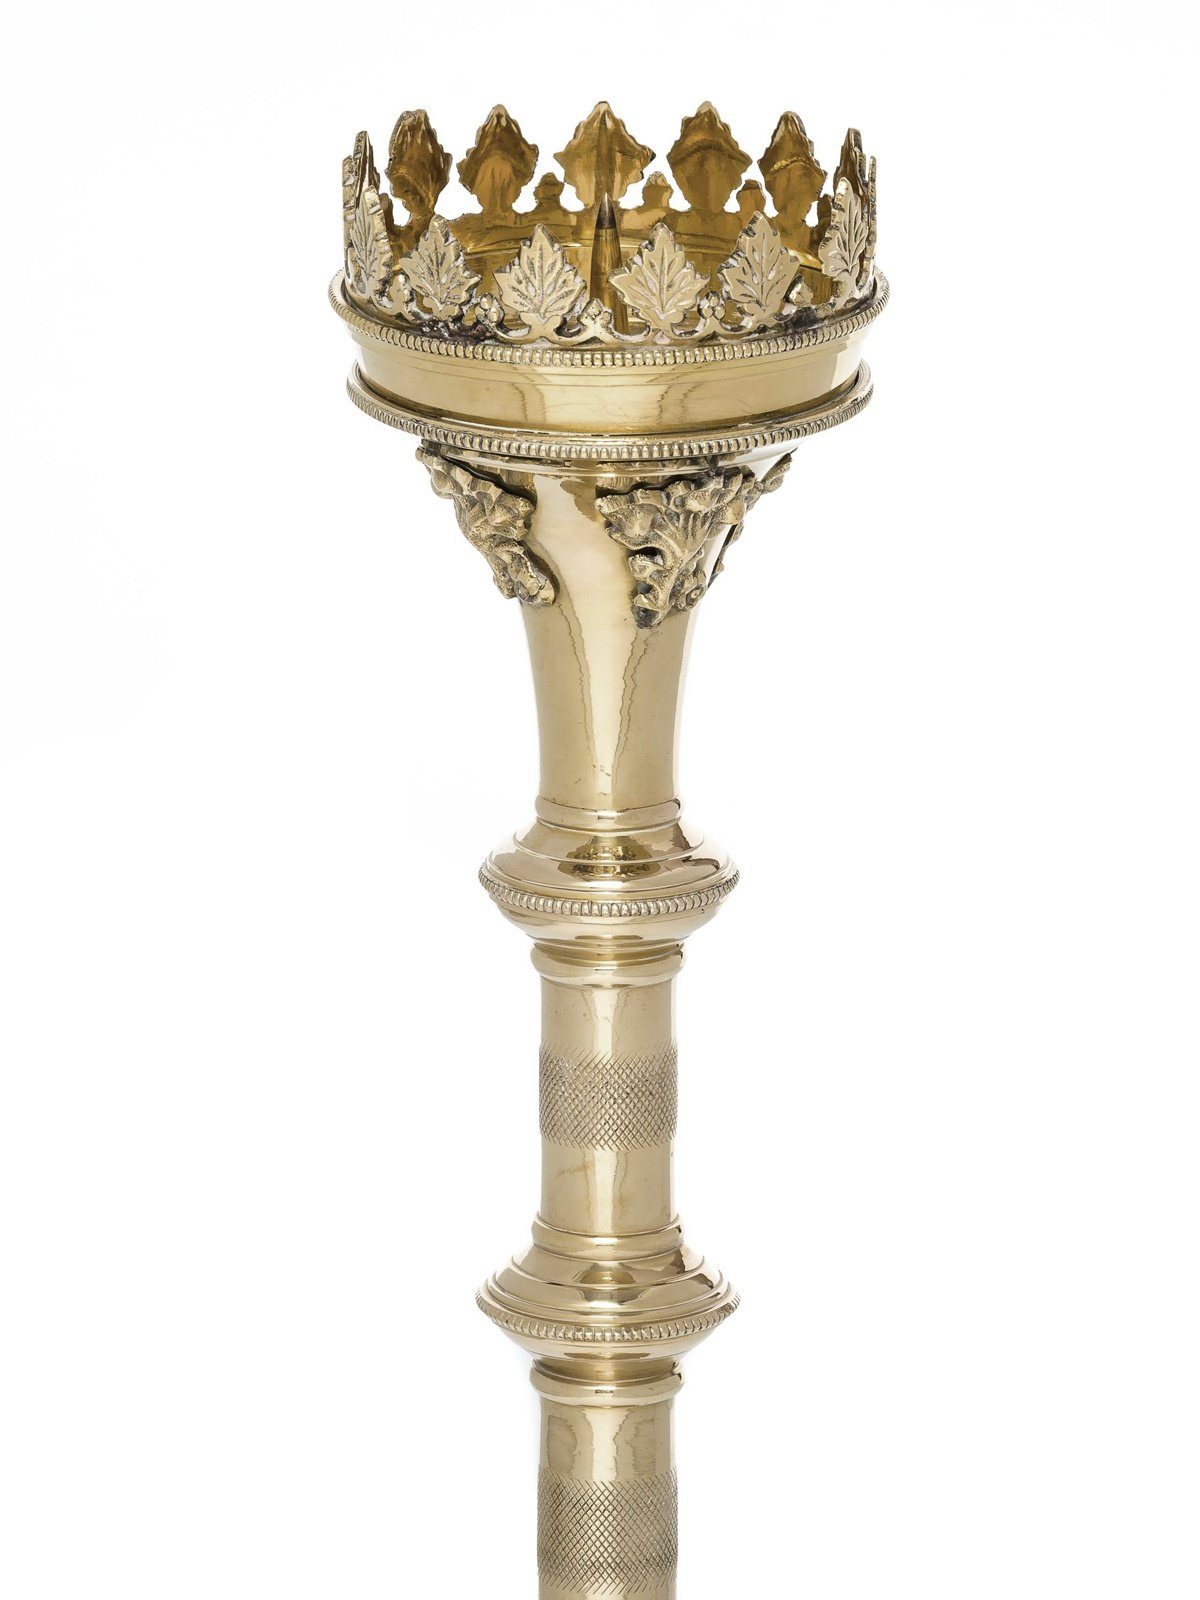 Kandelaber 47cm Kerzenleuchter Antik-Stil Aubaho Kerzenständer Kerzenständer Altarleuchter